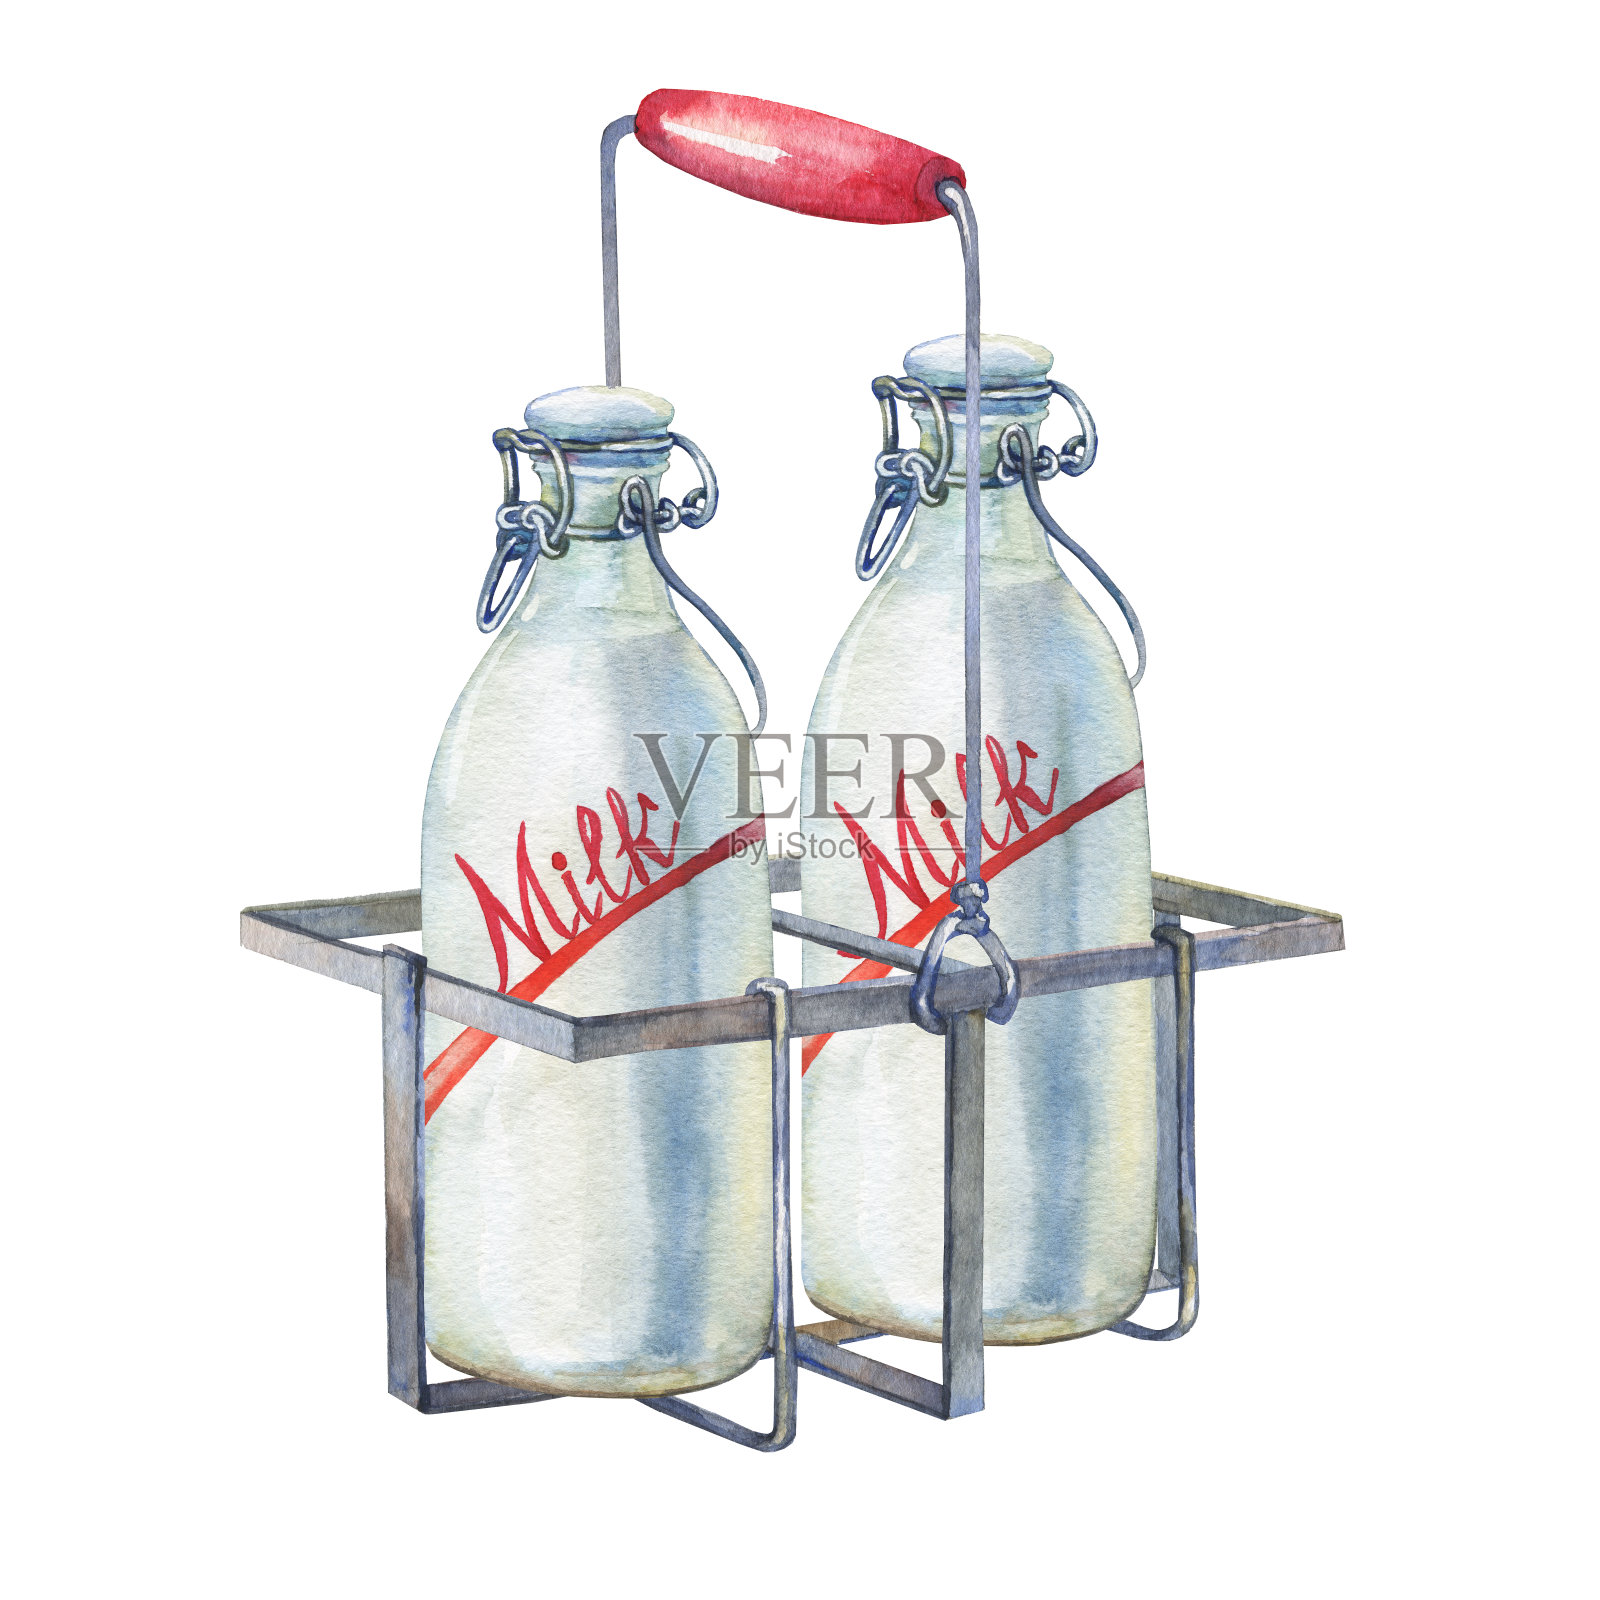 复古的农家厨房金属支架与牛奶瓶。手绘水彩画在白色的背景。插画图片素材